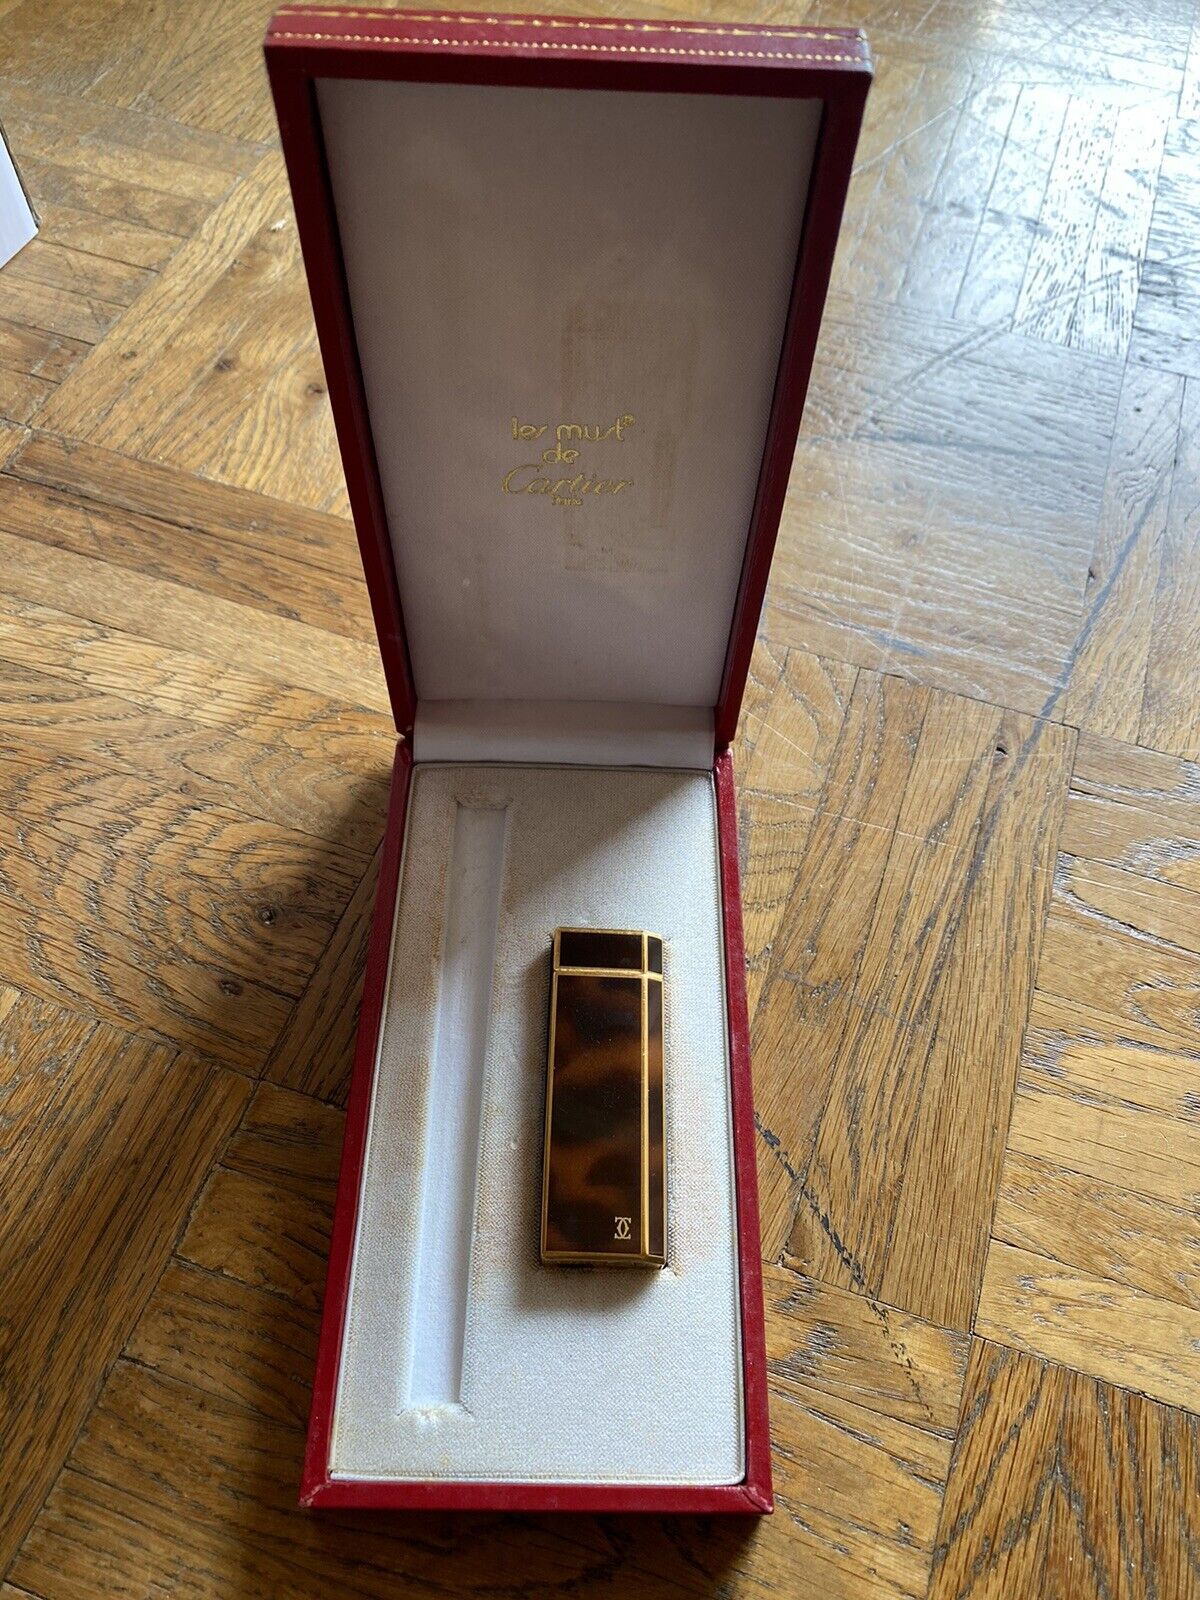 Cartier Le Must Paris Ref: 1C90249 Vintage Gold Plated Lighter Excellent Condition